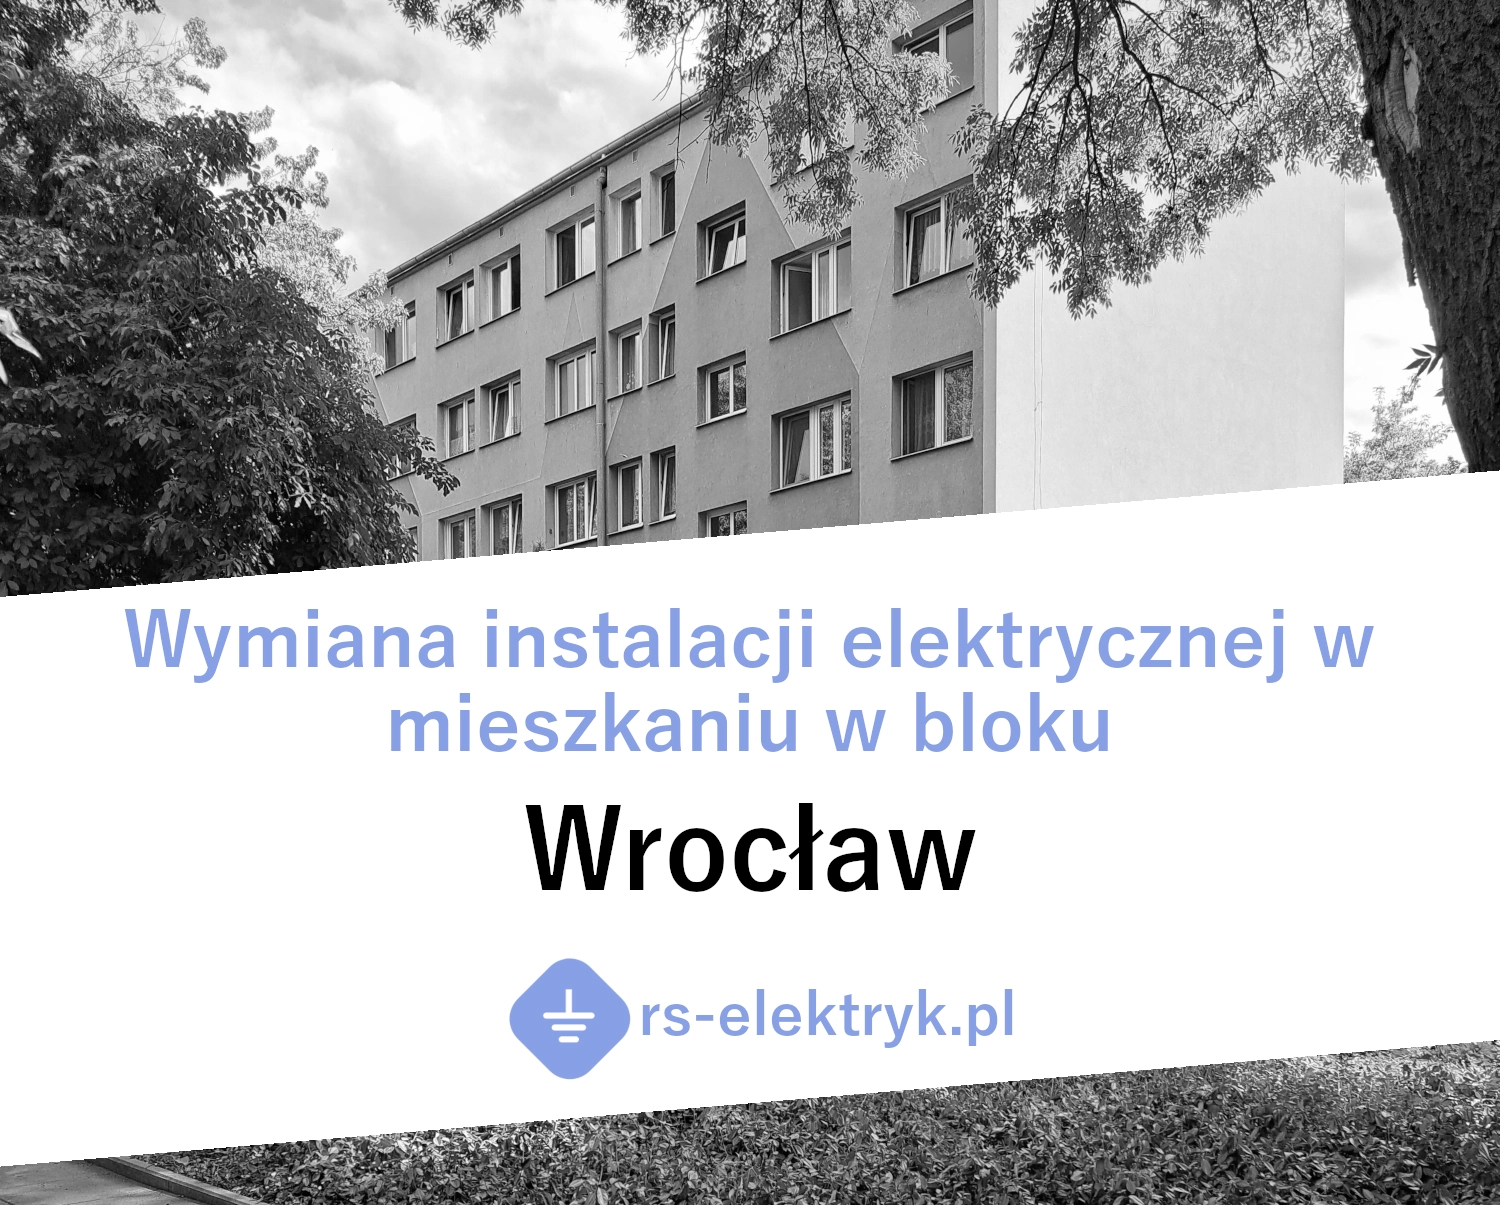 Wymiana instalacji elektrycznej w mieszkaniu w bloku (Wrocław)